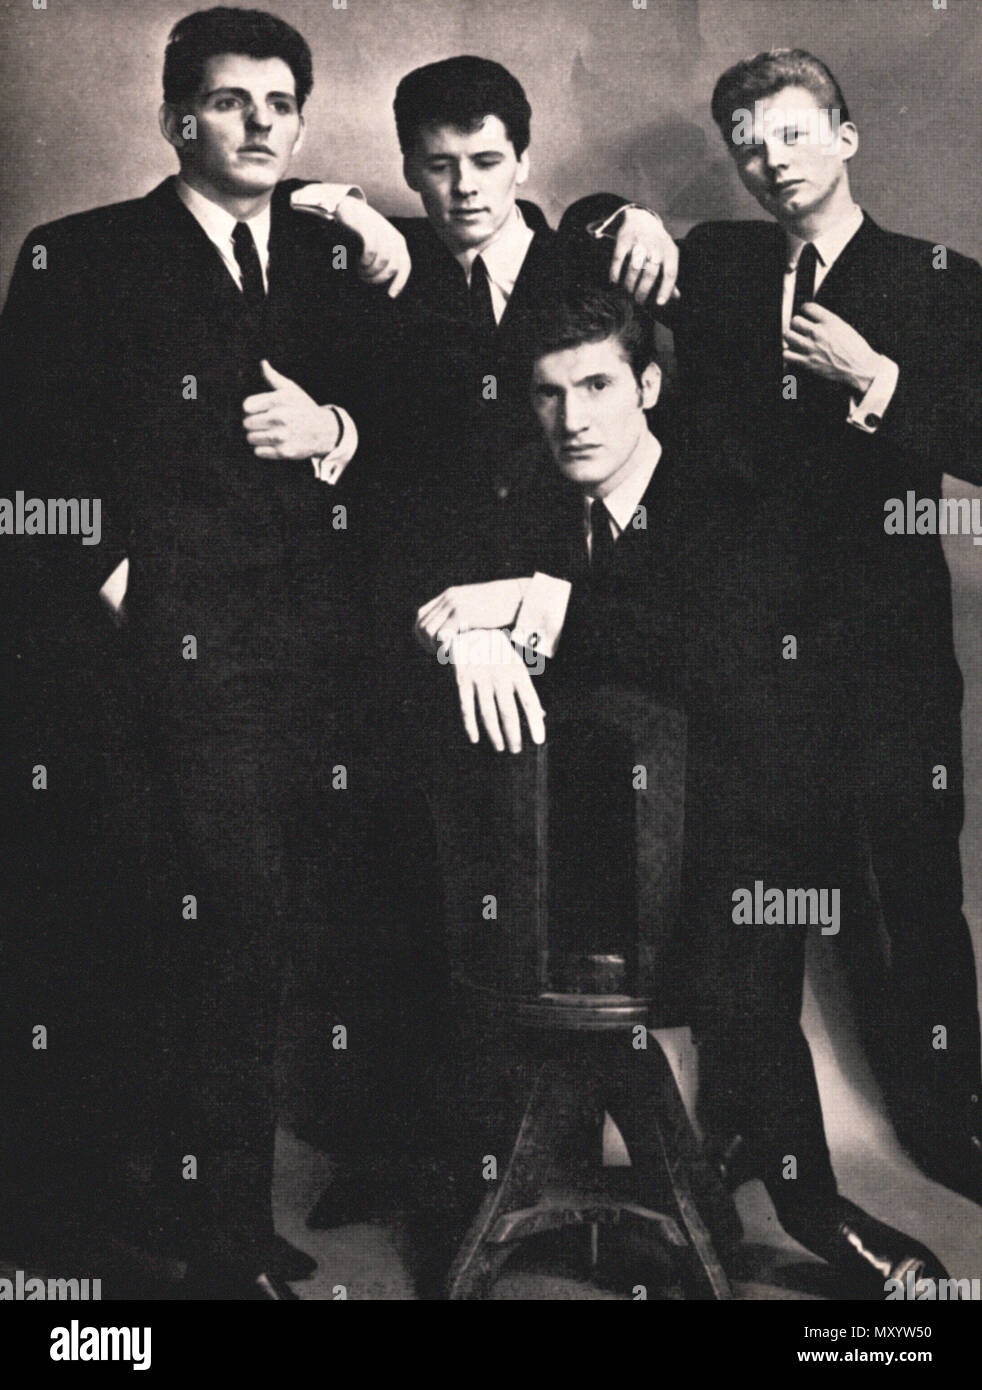 Début de l'image publicitaire du groupe pop les chercheurs, à partir de 1963 Banque D'Images